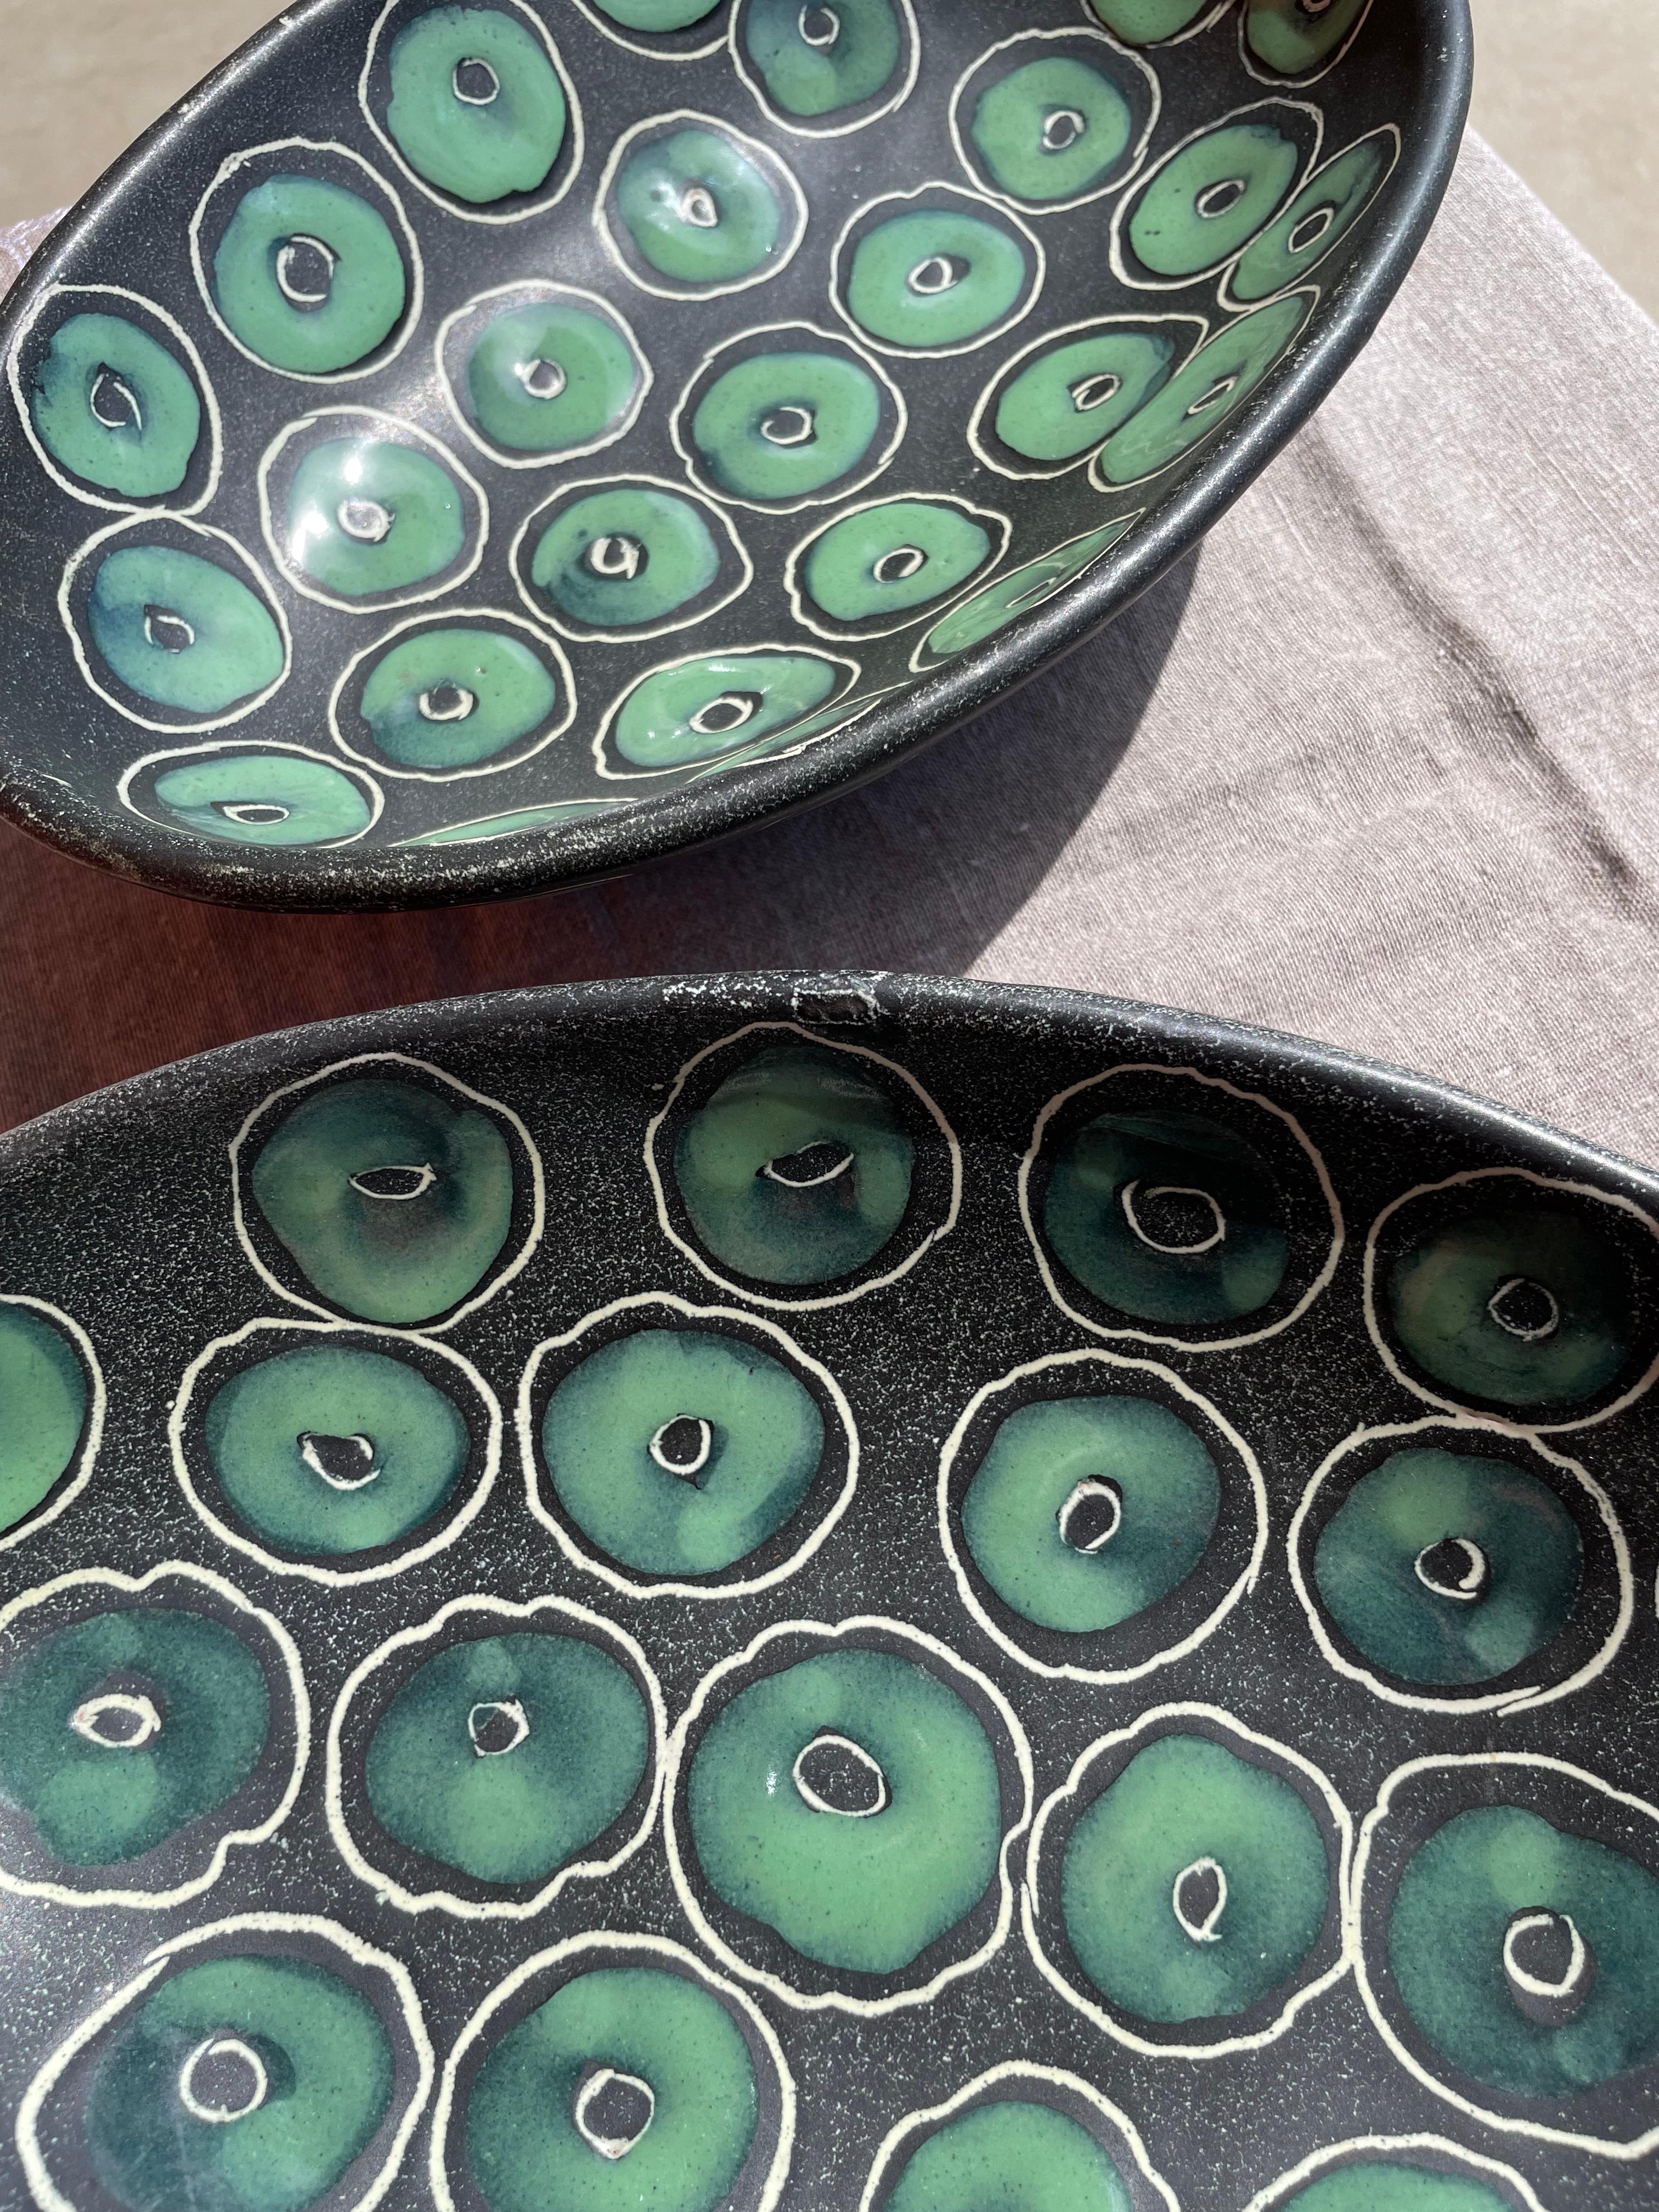 Ces bols italiens en céramique des années 1950 sont fabriqués de manière experte, car ils sont solides et lisses. La pièce a été moulée et peinte à la main. Le design est organique et fluide, la peinture se soulève légèrement pour donner une texture